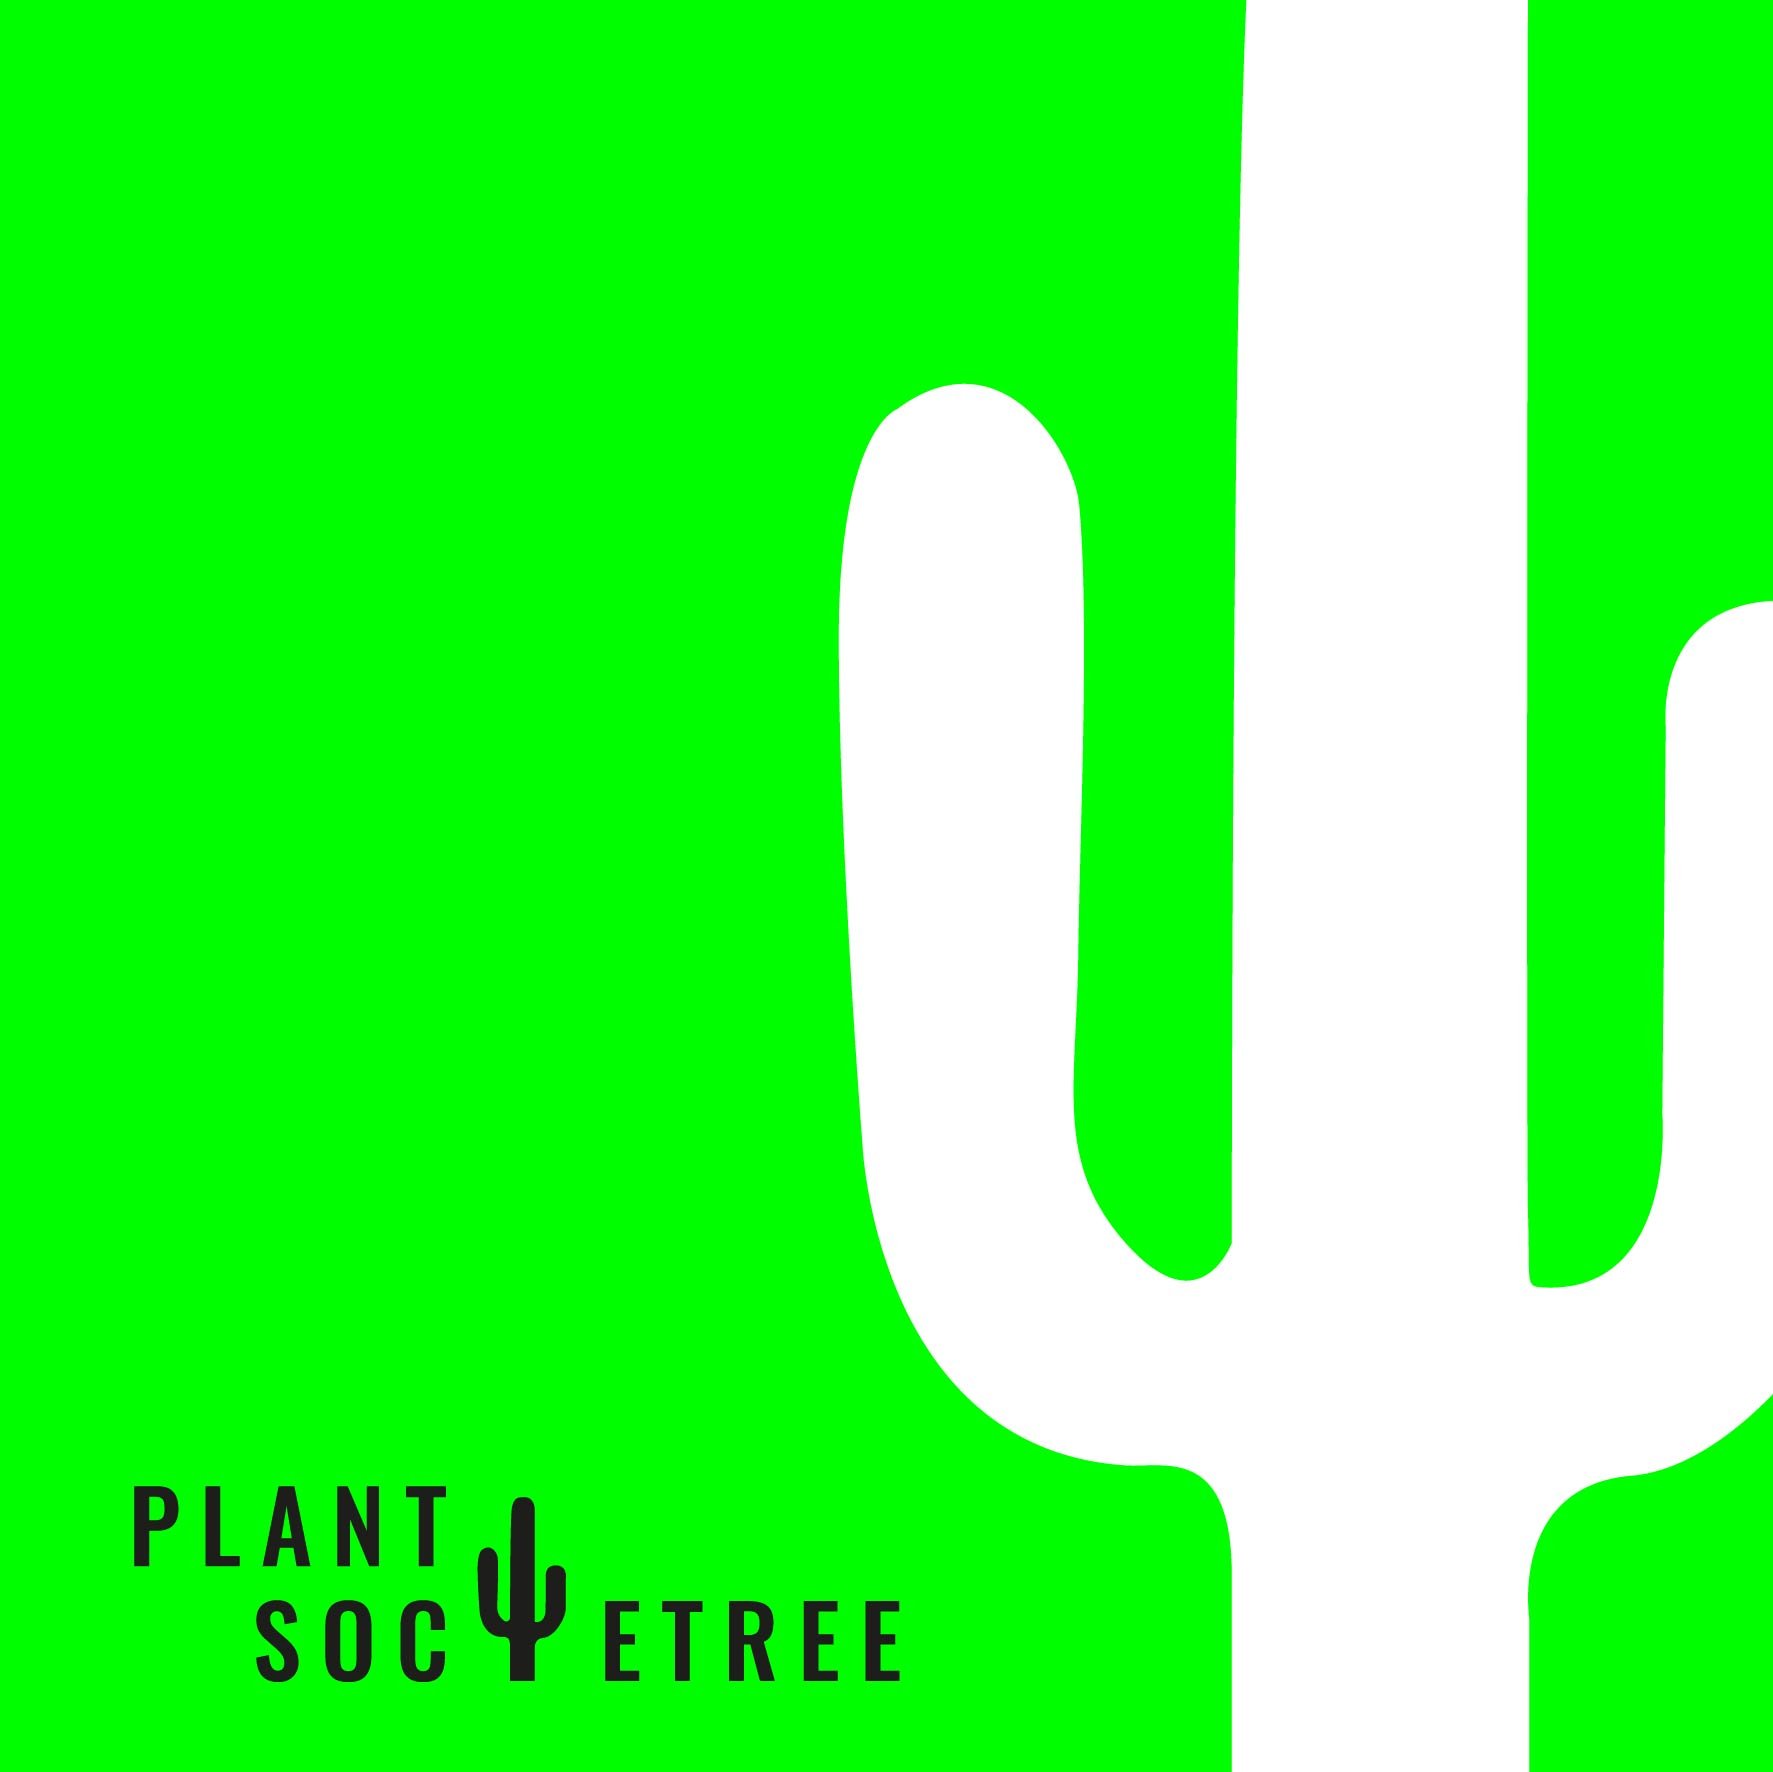 Plantsocietree__social_media_square-01.jpg